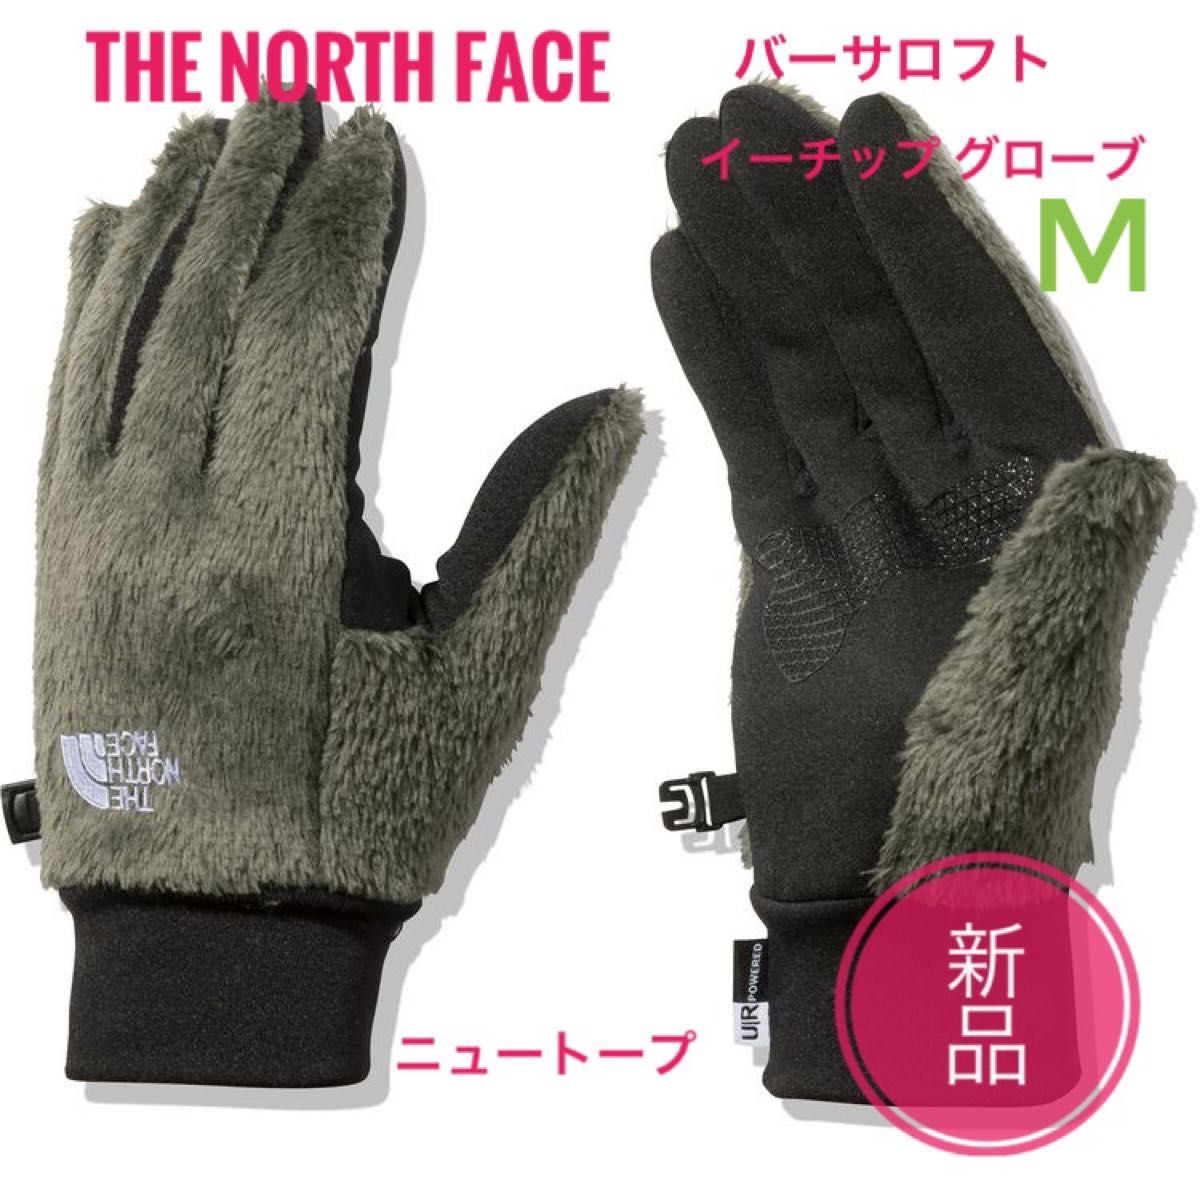 ☆必見☆THE NORTH FACE グローブ (M )とネックウォーマー 手袋 